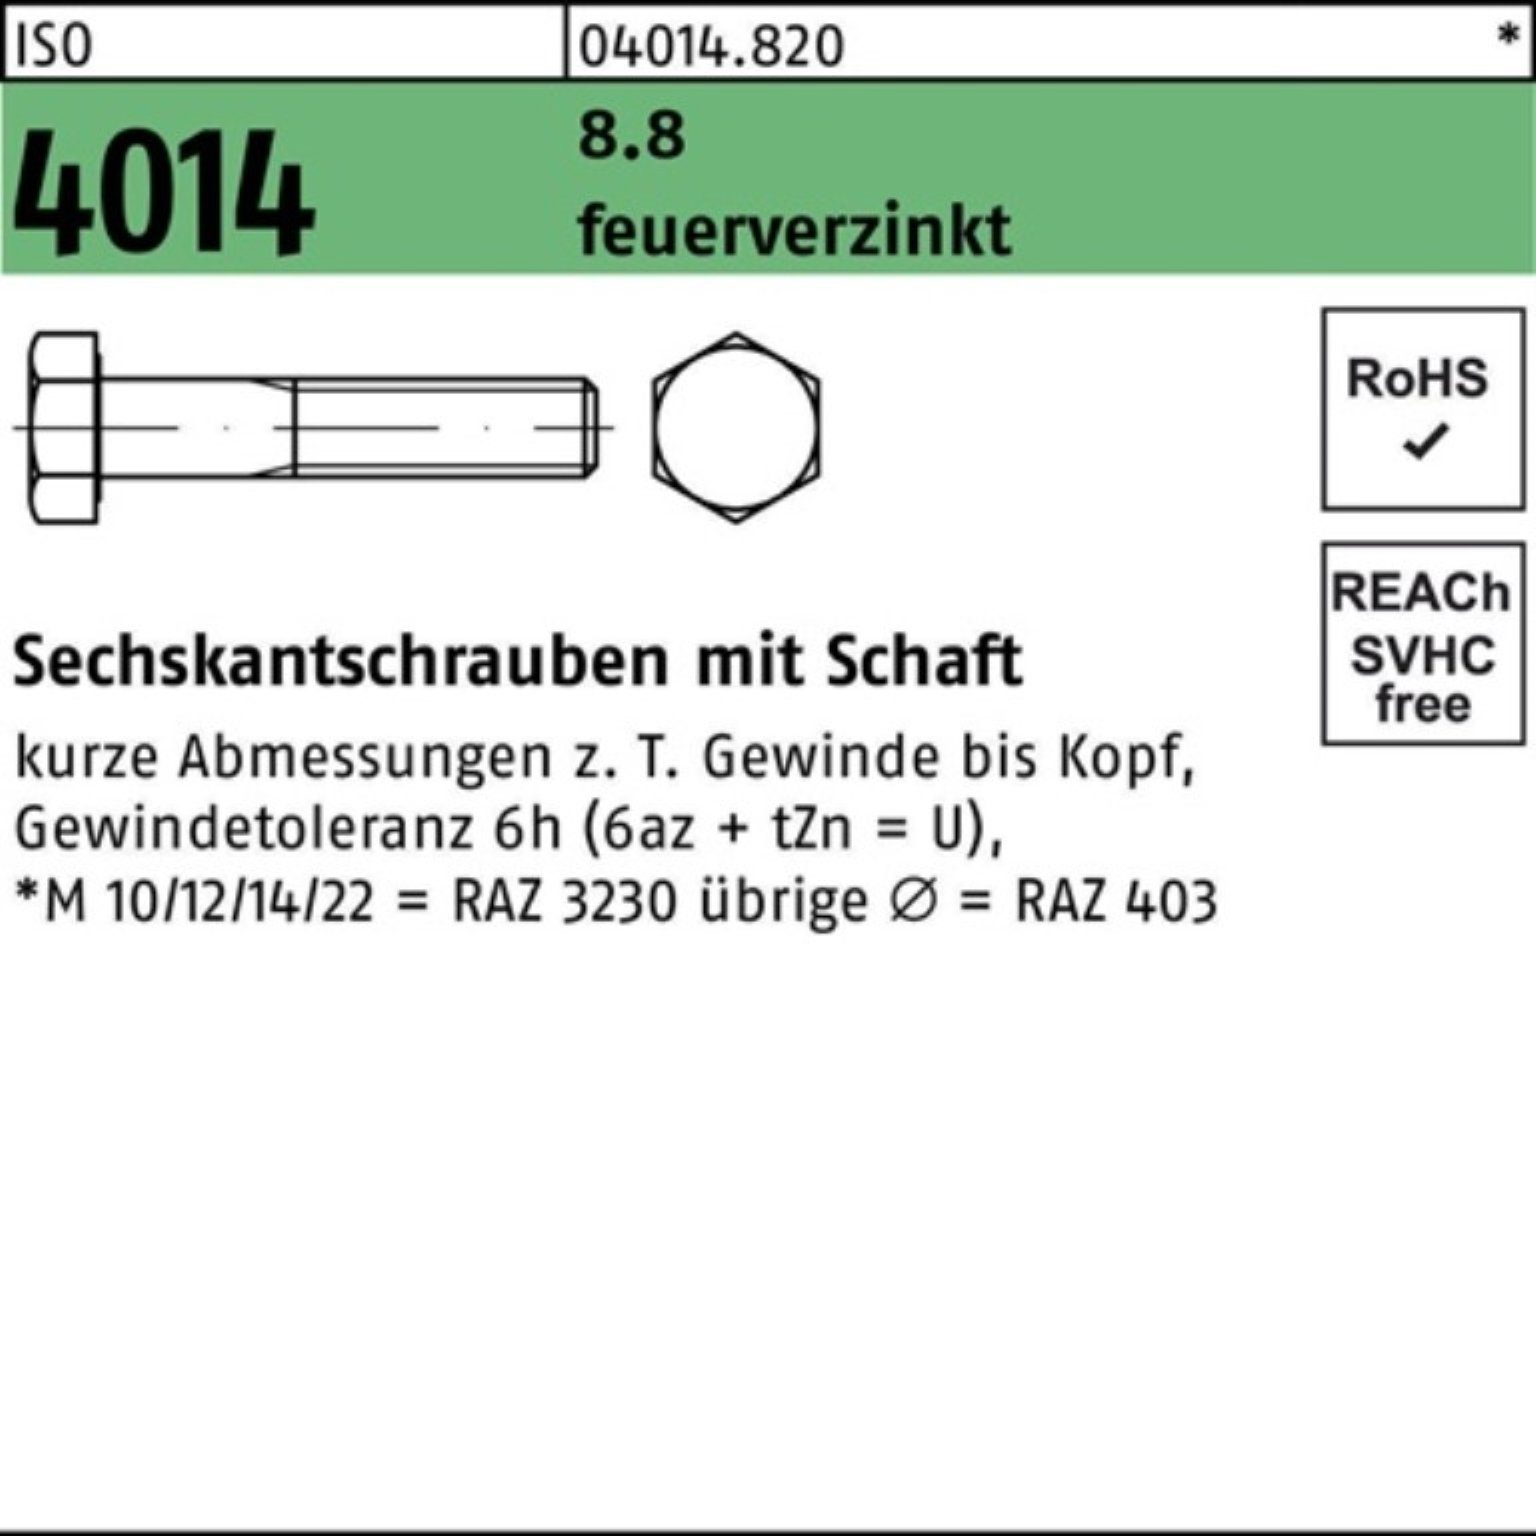 Bufab Sechskantschraube 100er Pack Sechskantschraube ISO 4014 Schaft M20x 150 8.8 feuerverz. 2